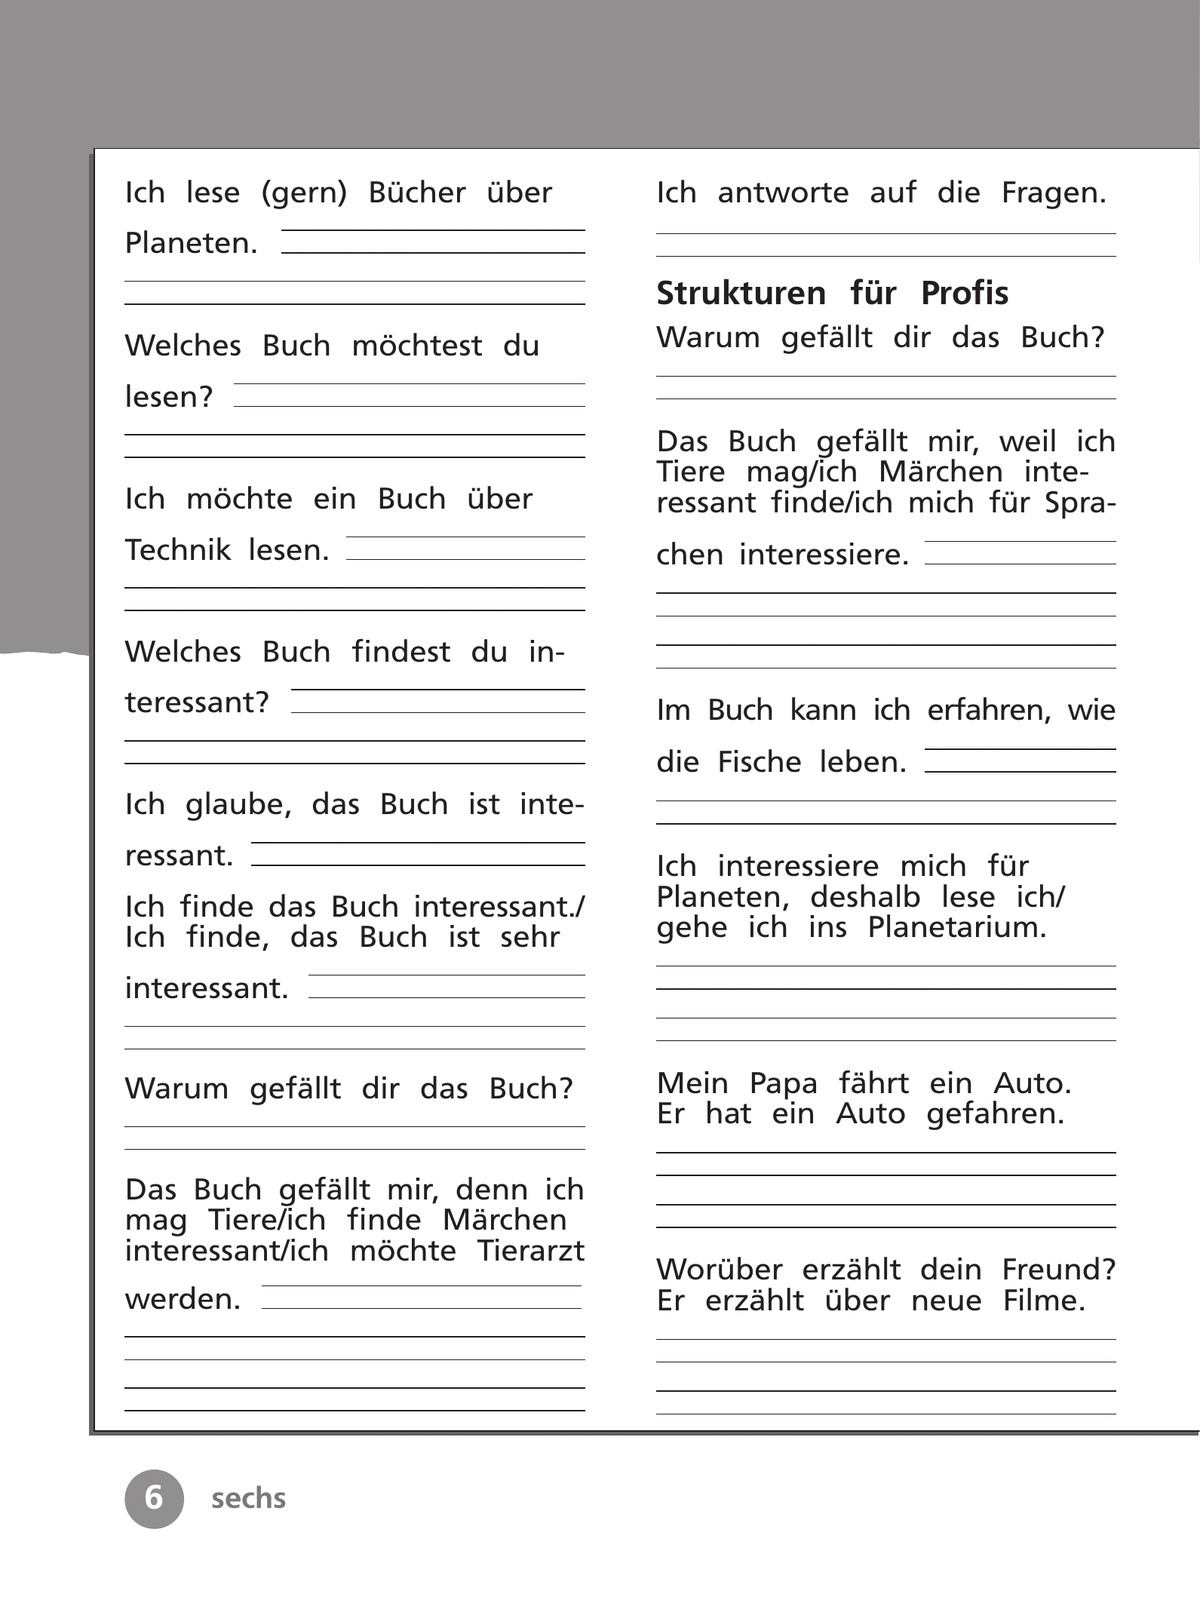 Немецкий язык. Рабочая тетрадь. 4 класс. В 2 ч. Часть 2 2